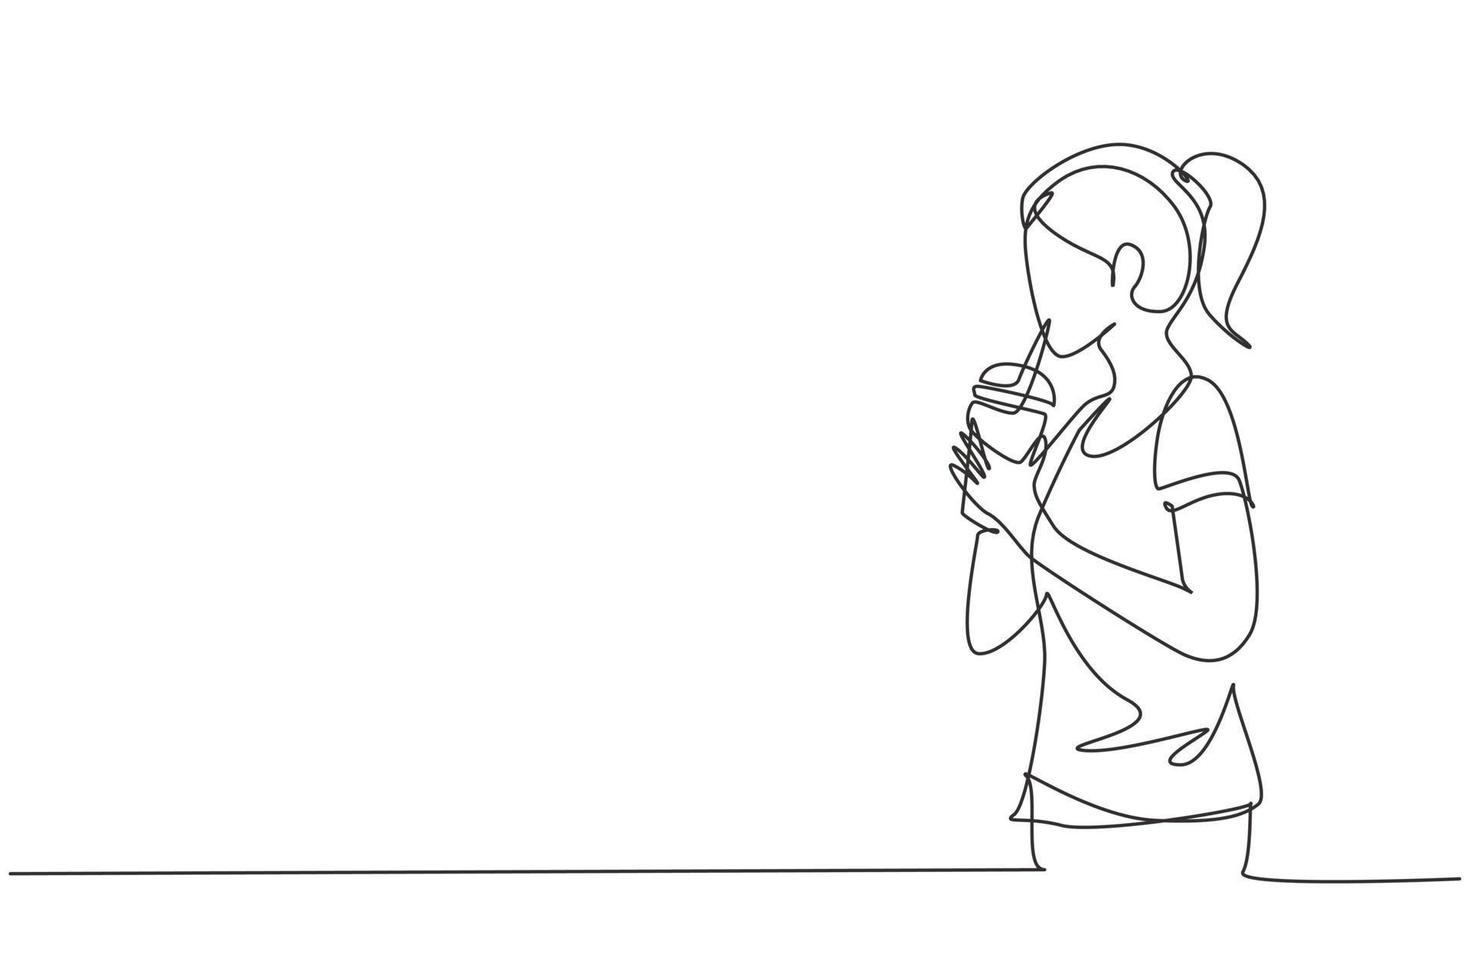 singolo disegno a tratteggio vista laterale della giovane donna adulta che usa la cannuccia e beve il succo di frullato dal bicchiere di plastica. renderla rinfrescante in estate. illustrazione vettoriale grafica di disegno di disegno di linea continua